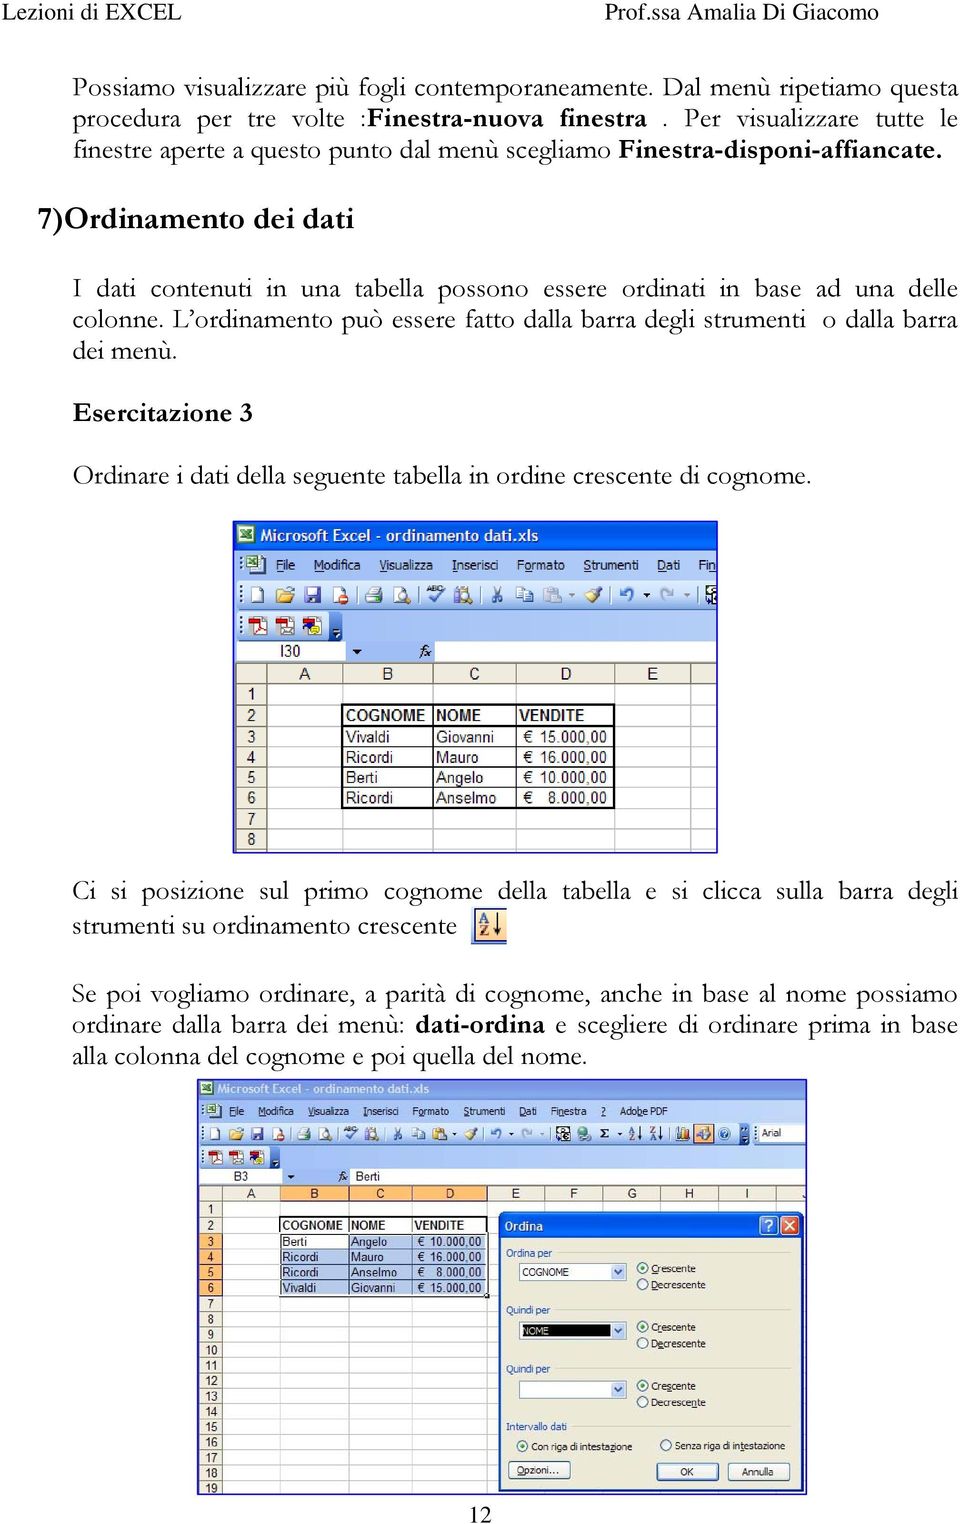 7)Ordinamento dei dati I dati contenuti in una tabella possono essere ordinati in base ad una delle colonne. L ordinamento può essere fatto dalla barra degli strumenti o dalla barra dei menù.